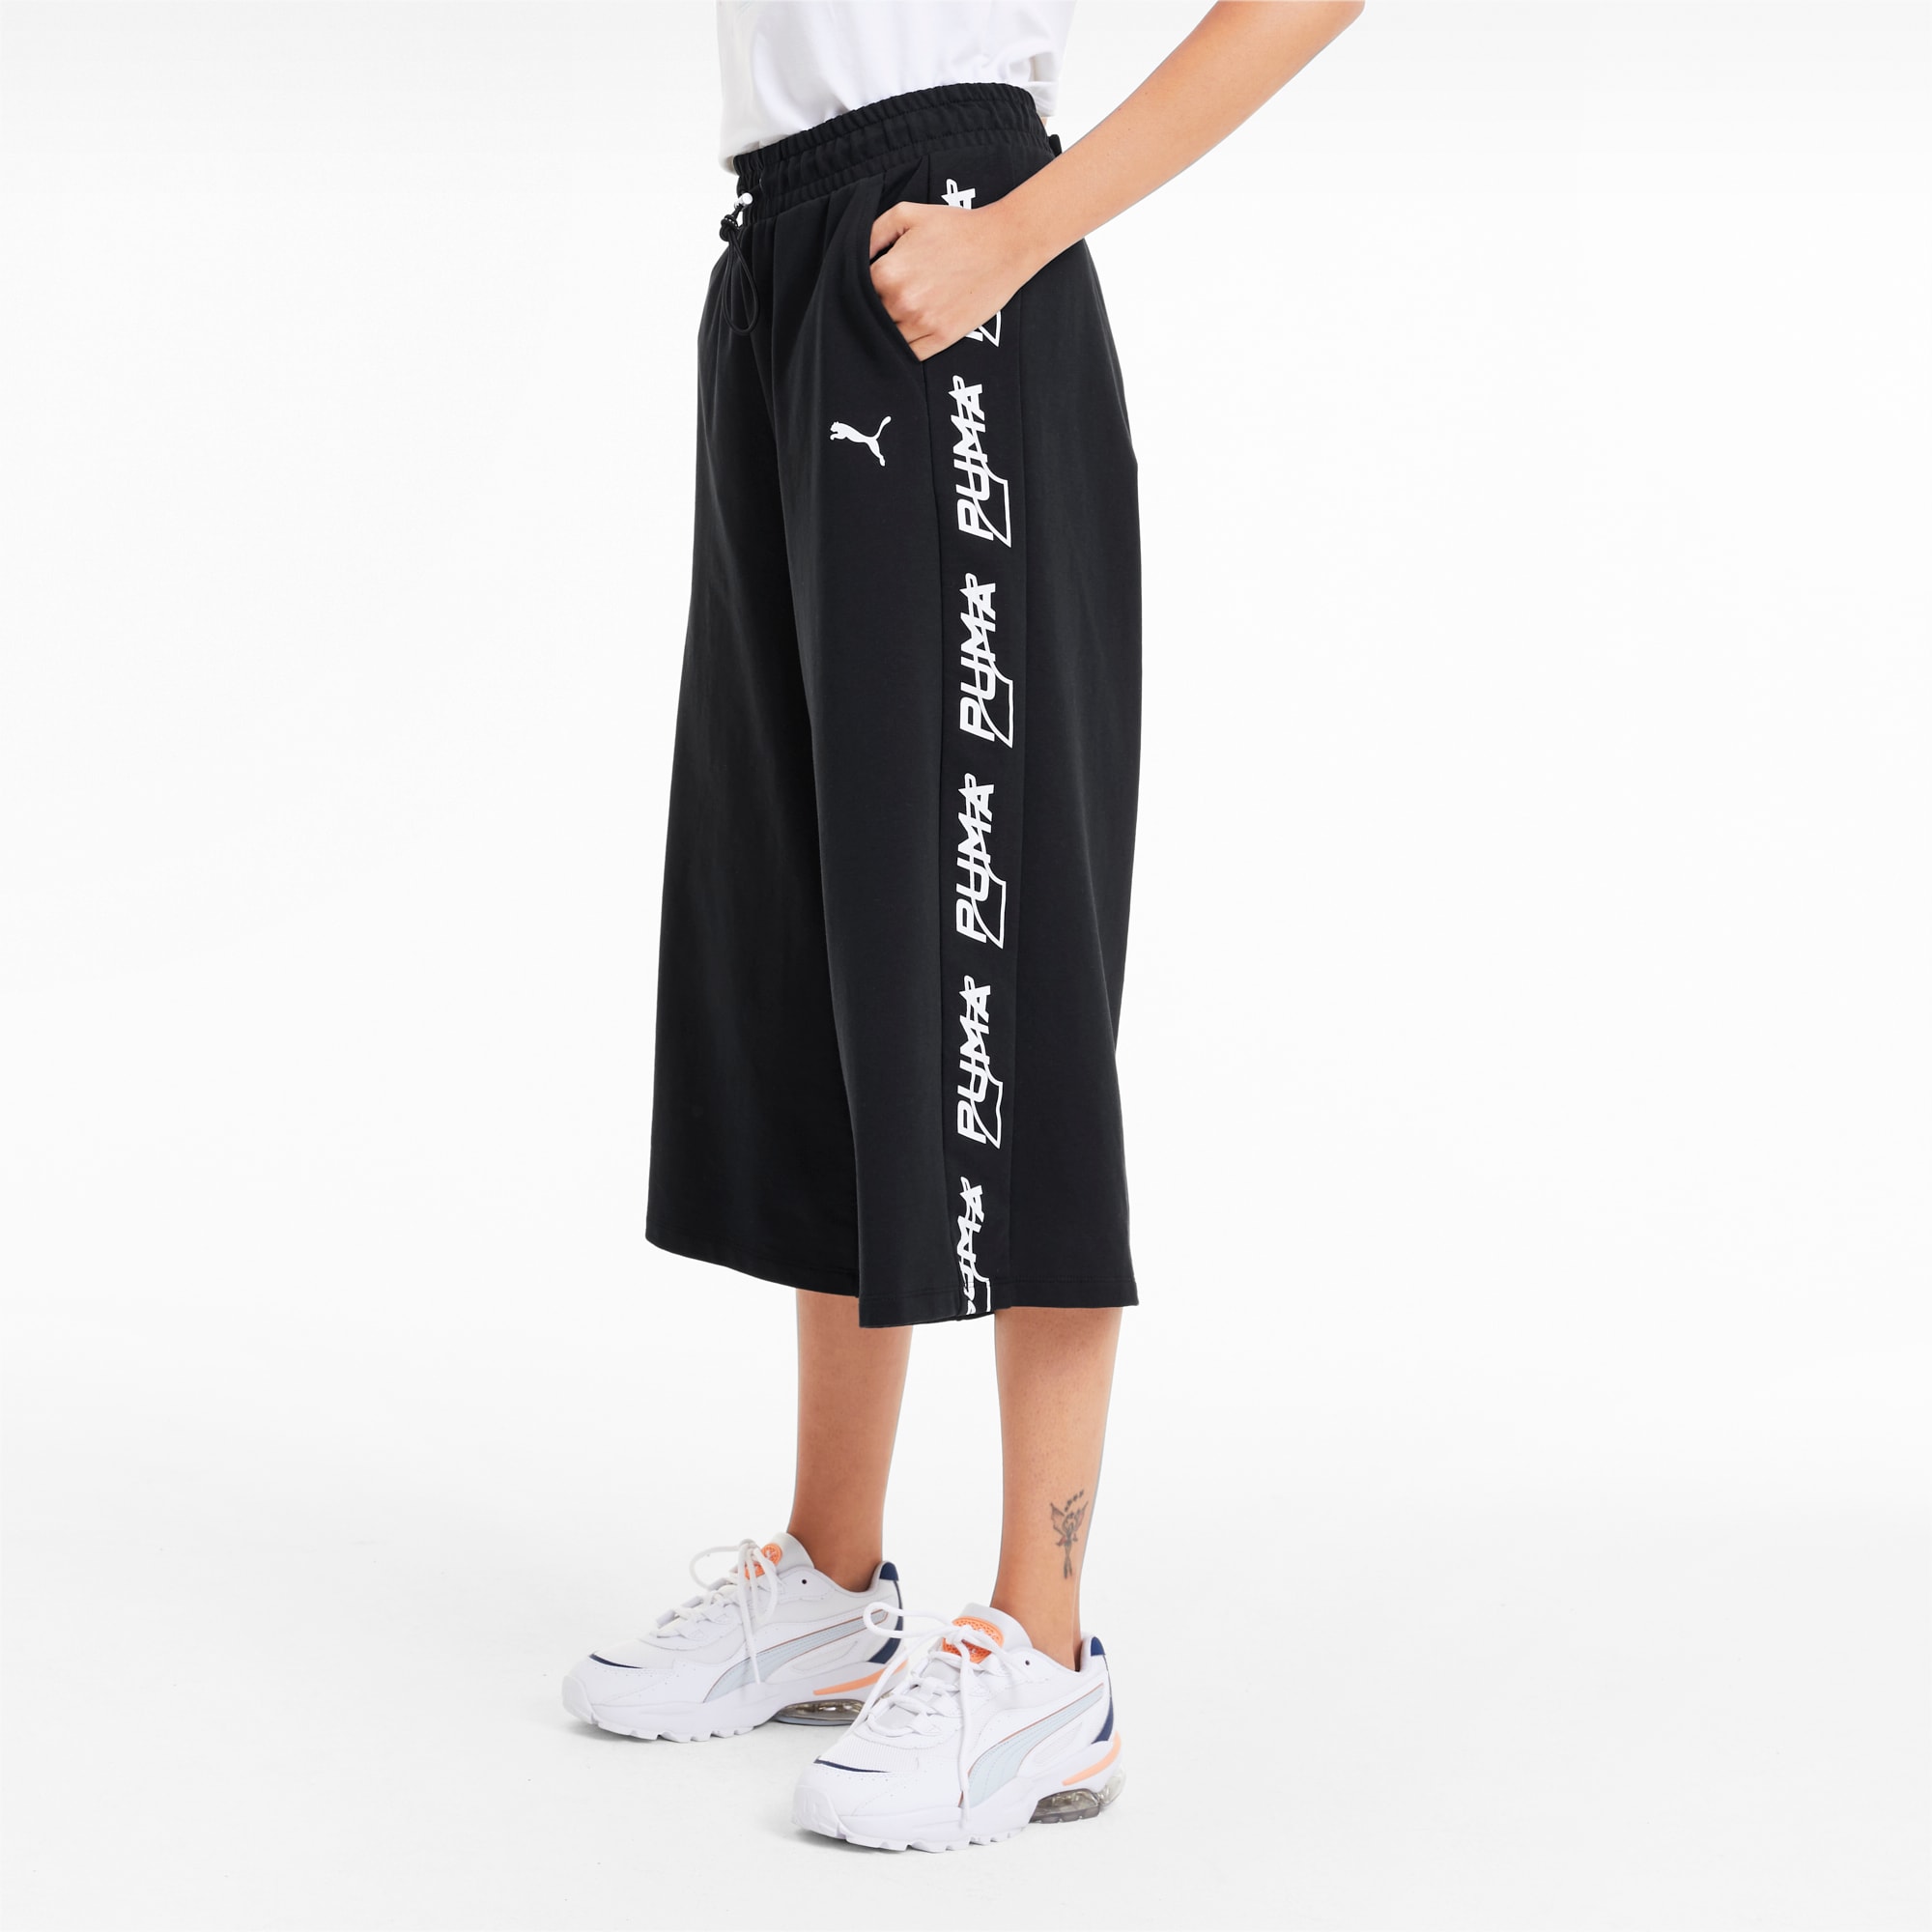 puma 3 4 length shorts